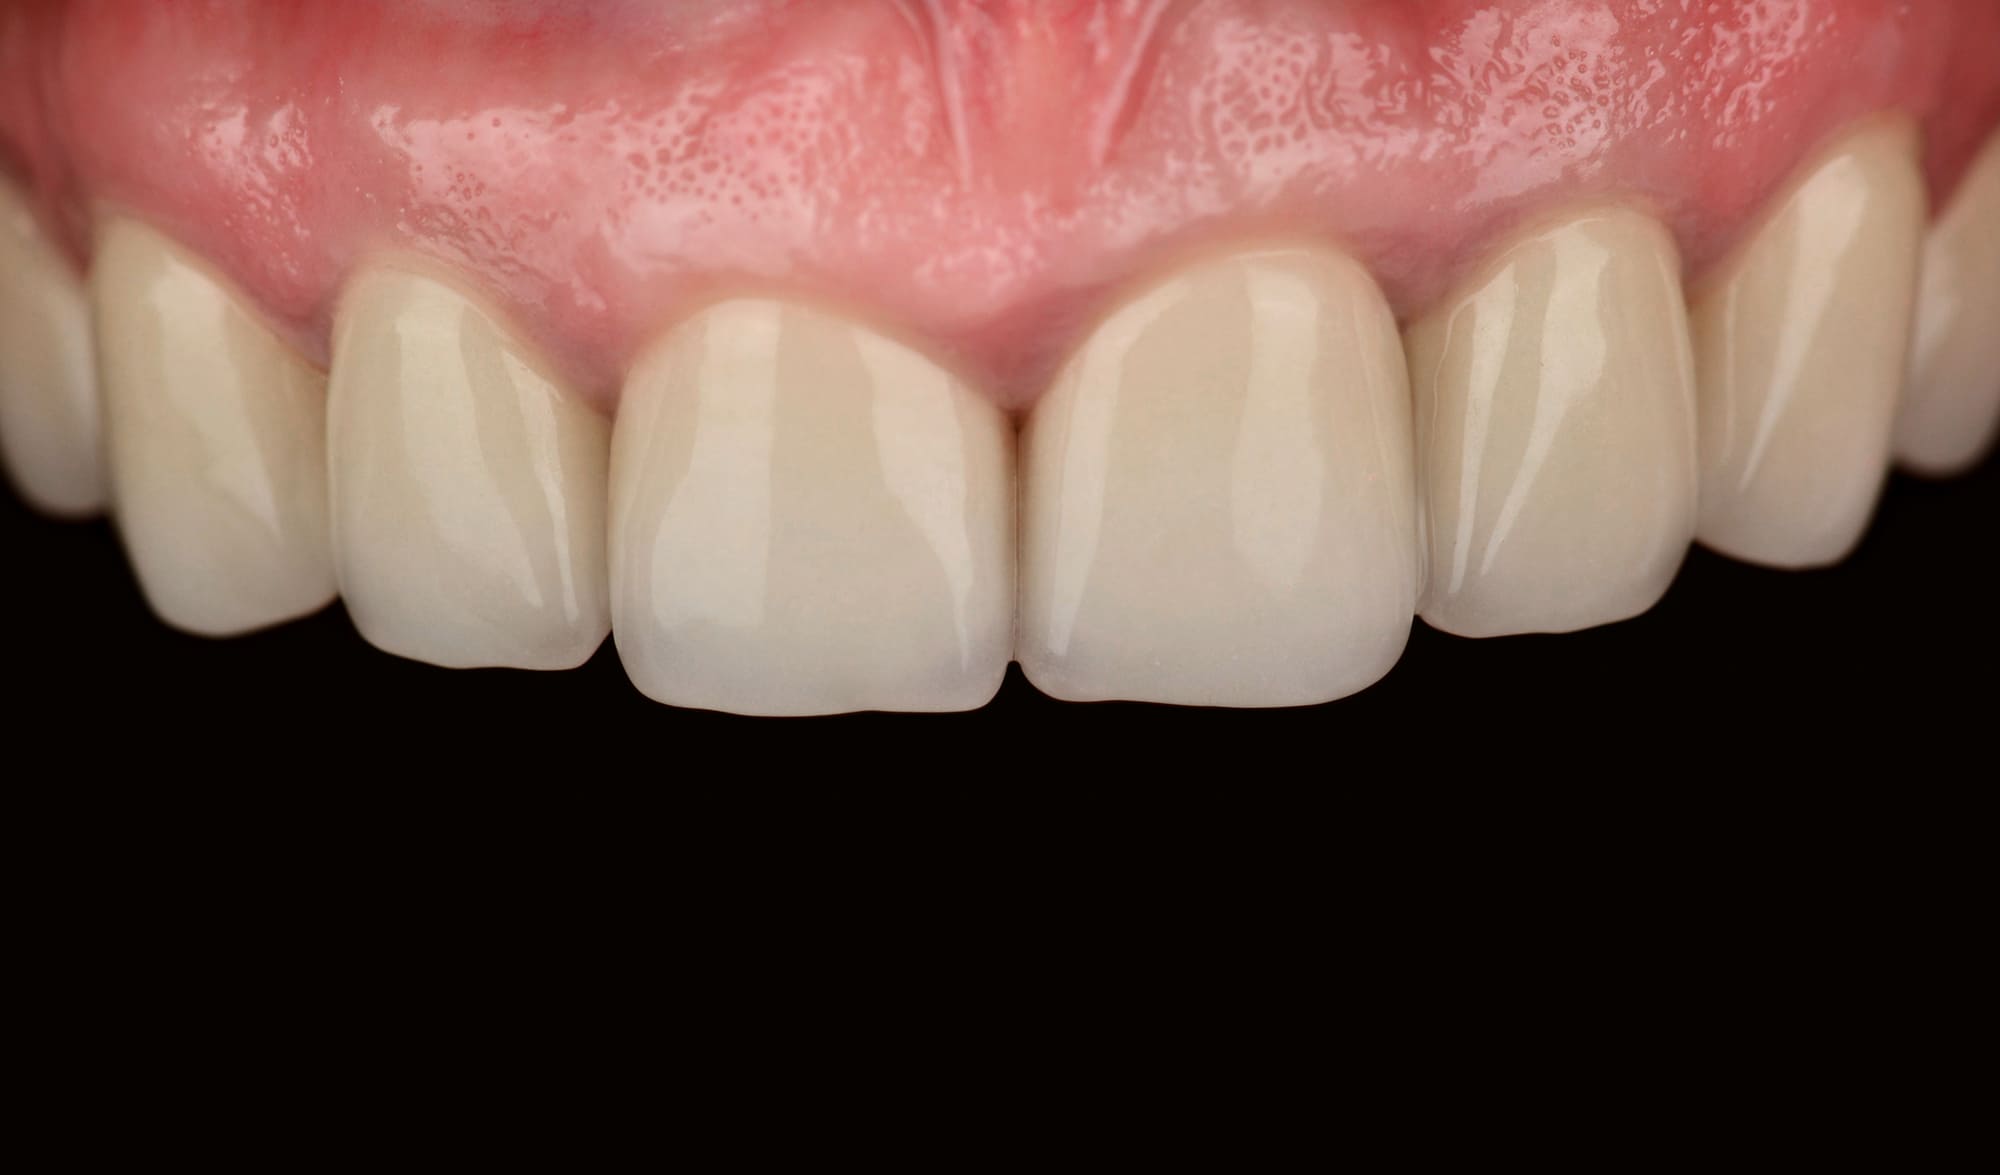 На нижней челюсти слева отсутствовало несколько зубов, присутствовали множественные пломбы и частичная стираемость.